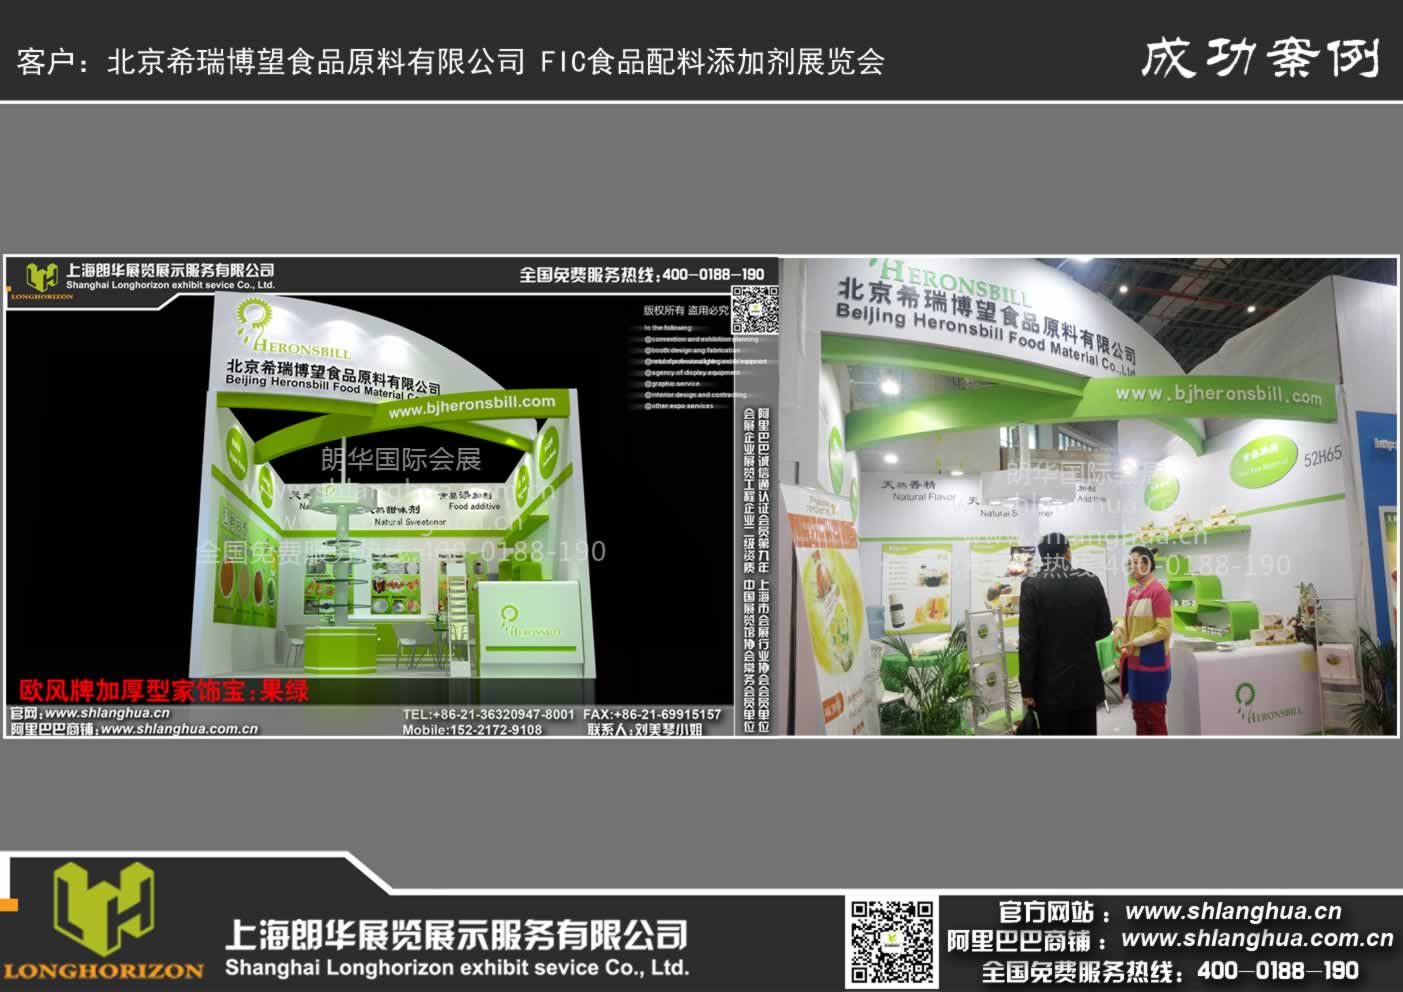 北京希瑞博望食品原料有限公司 FIC食品配料添加剂展览会